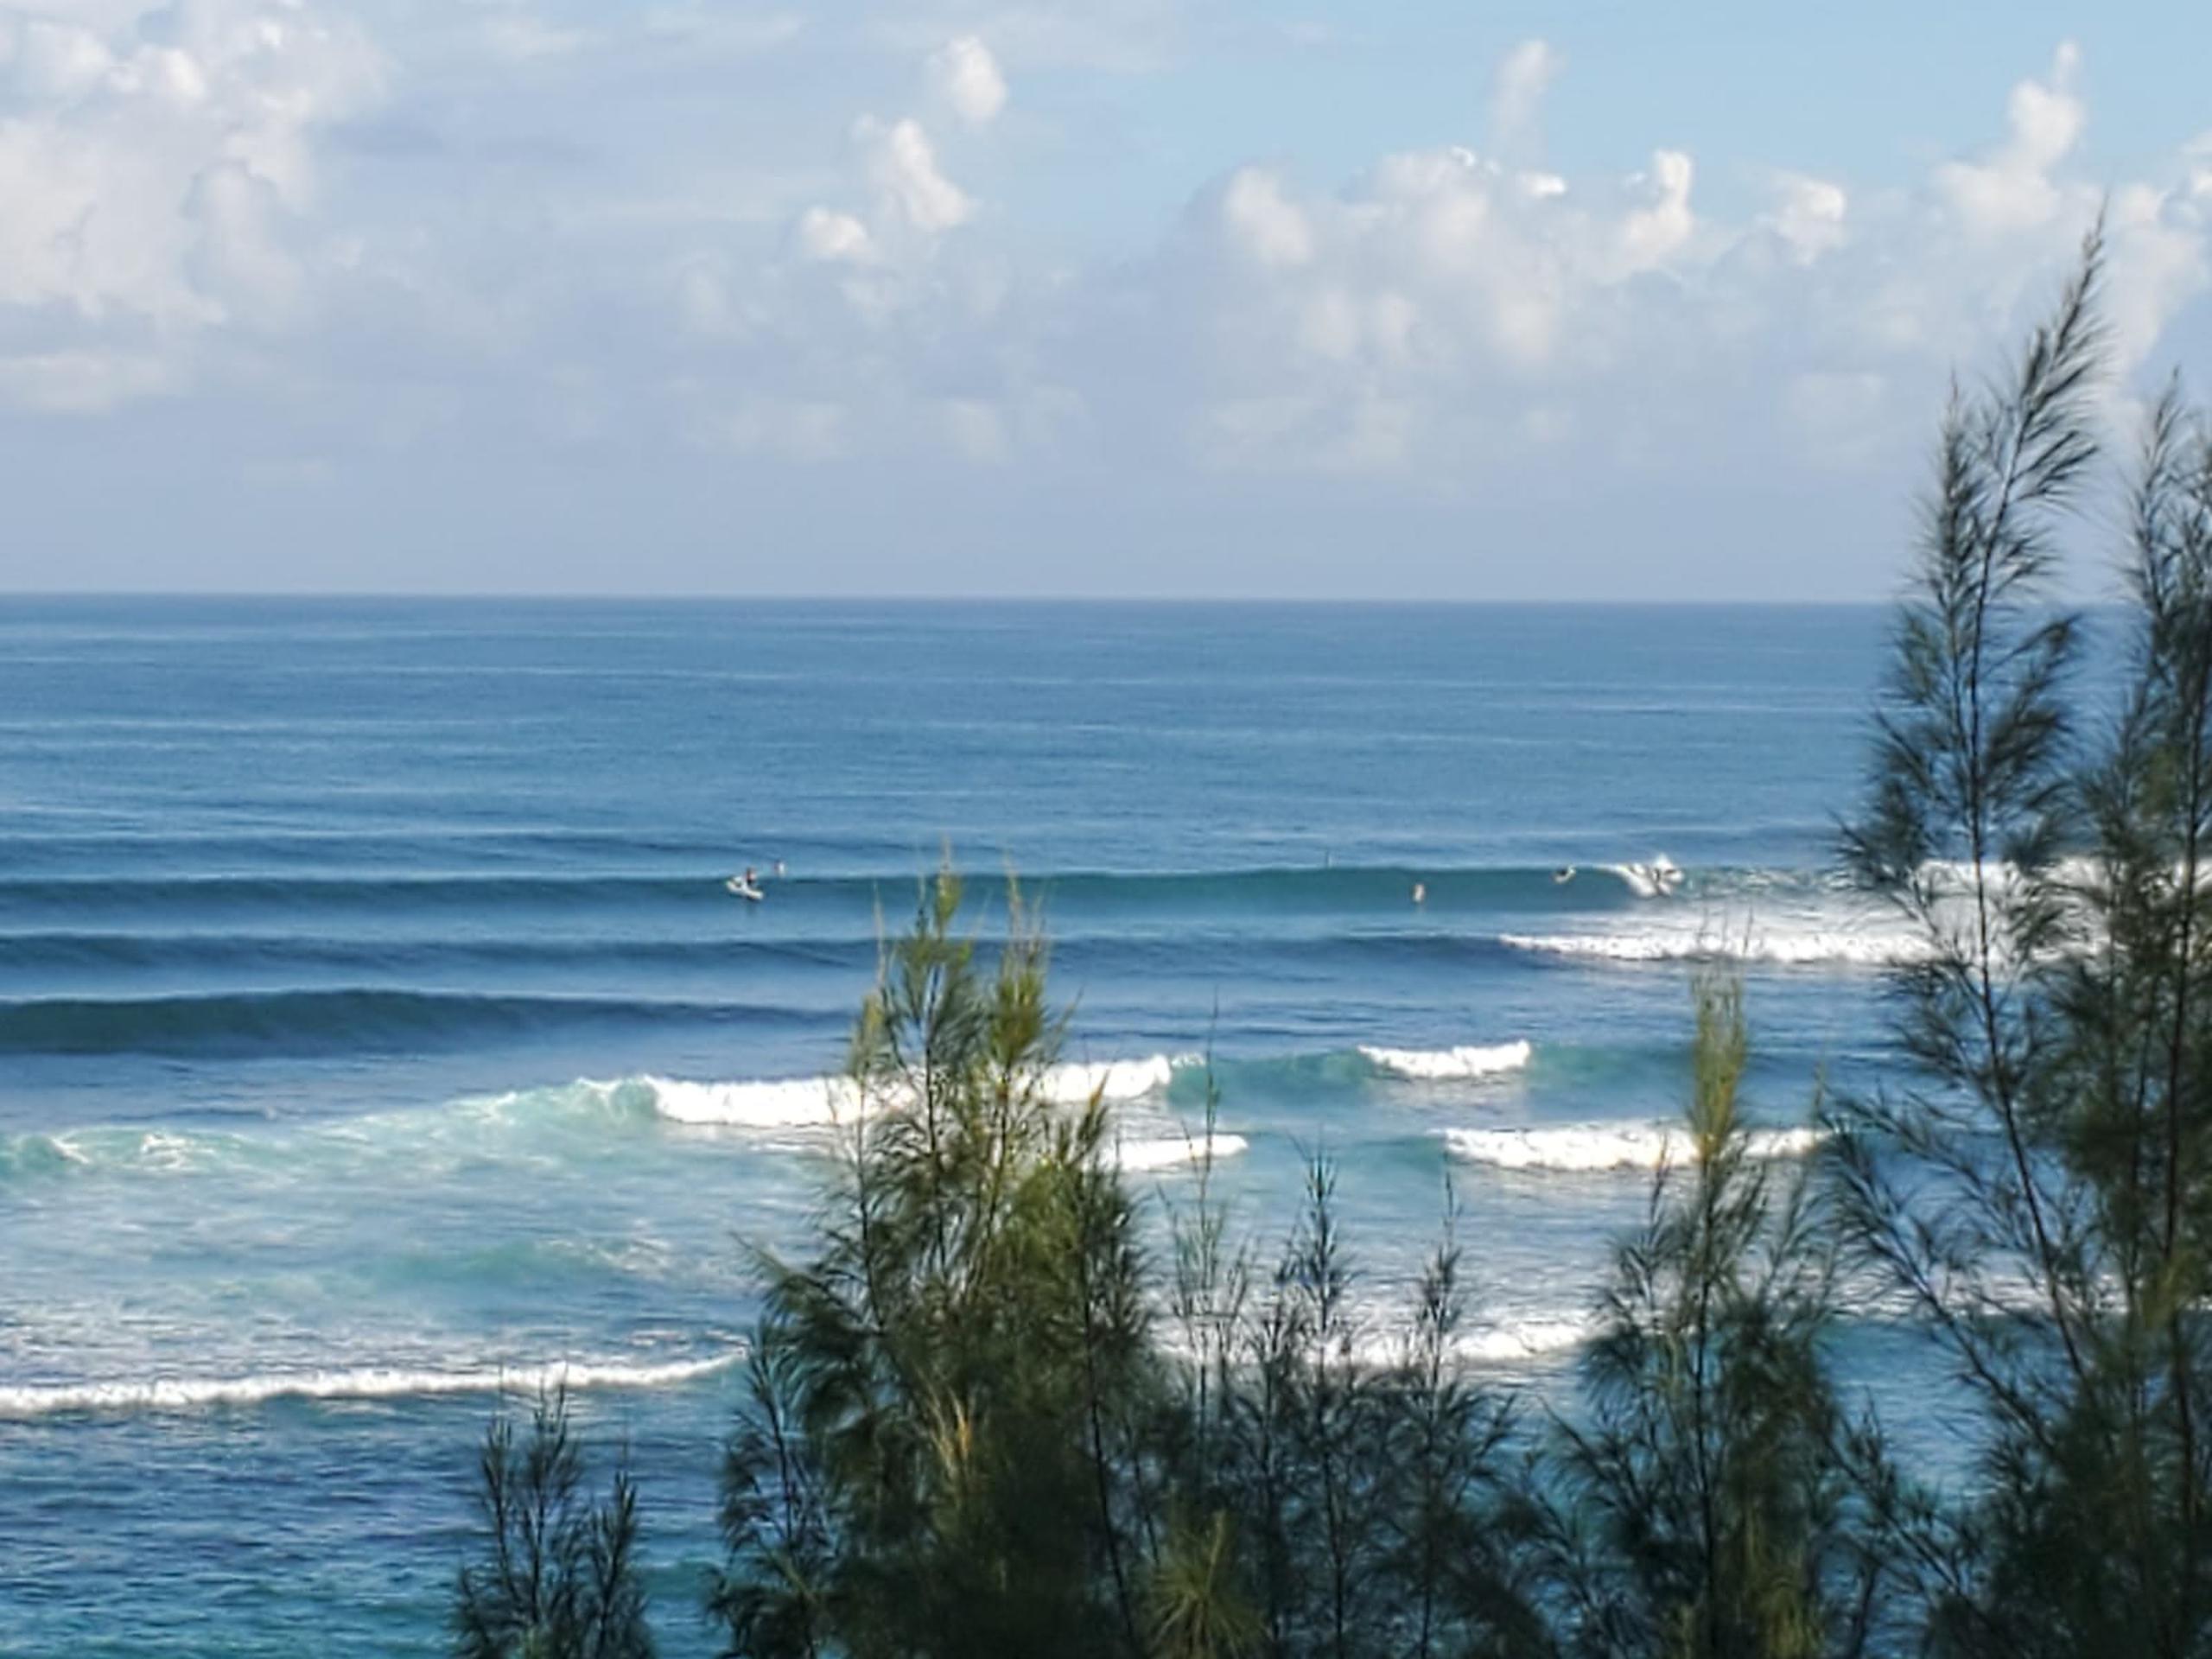 La Ocho en Puerto de Tierra será la sede del evento SUB de surfing de la International Surfing Association.